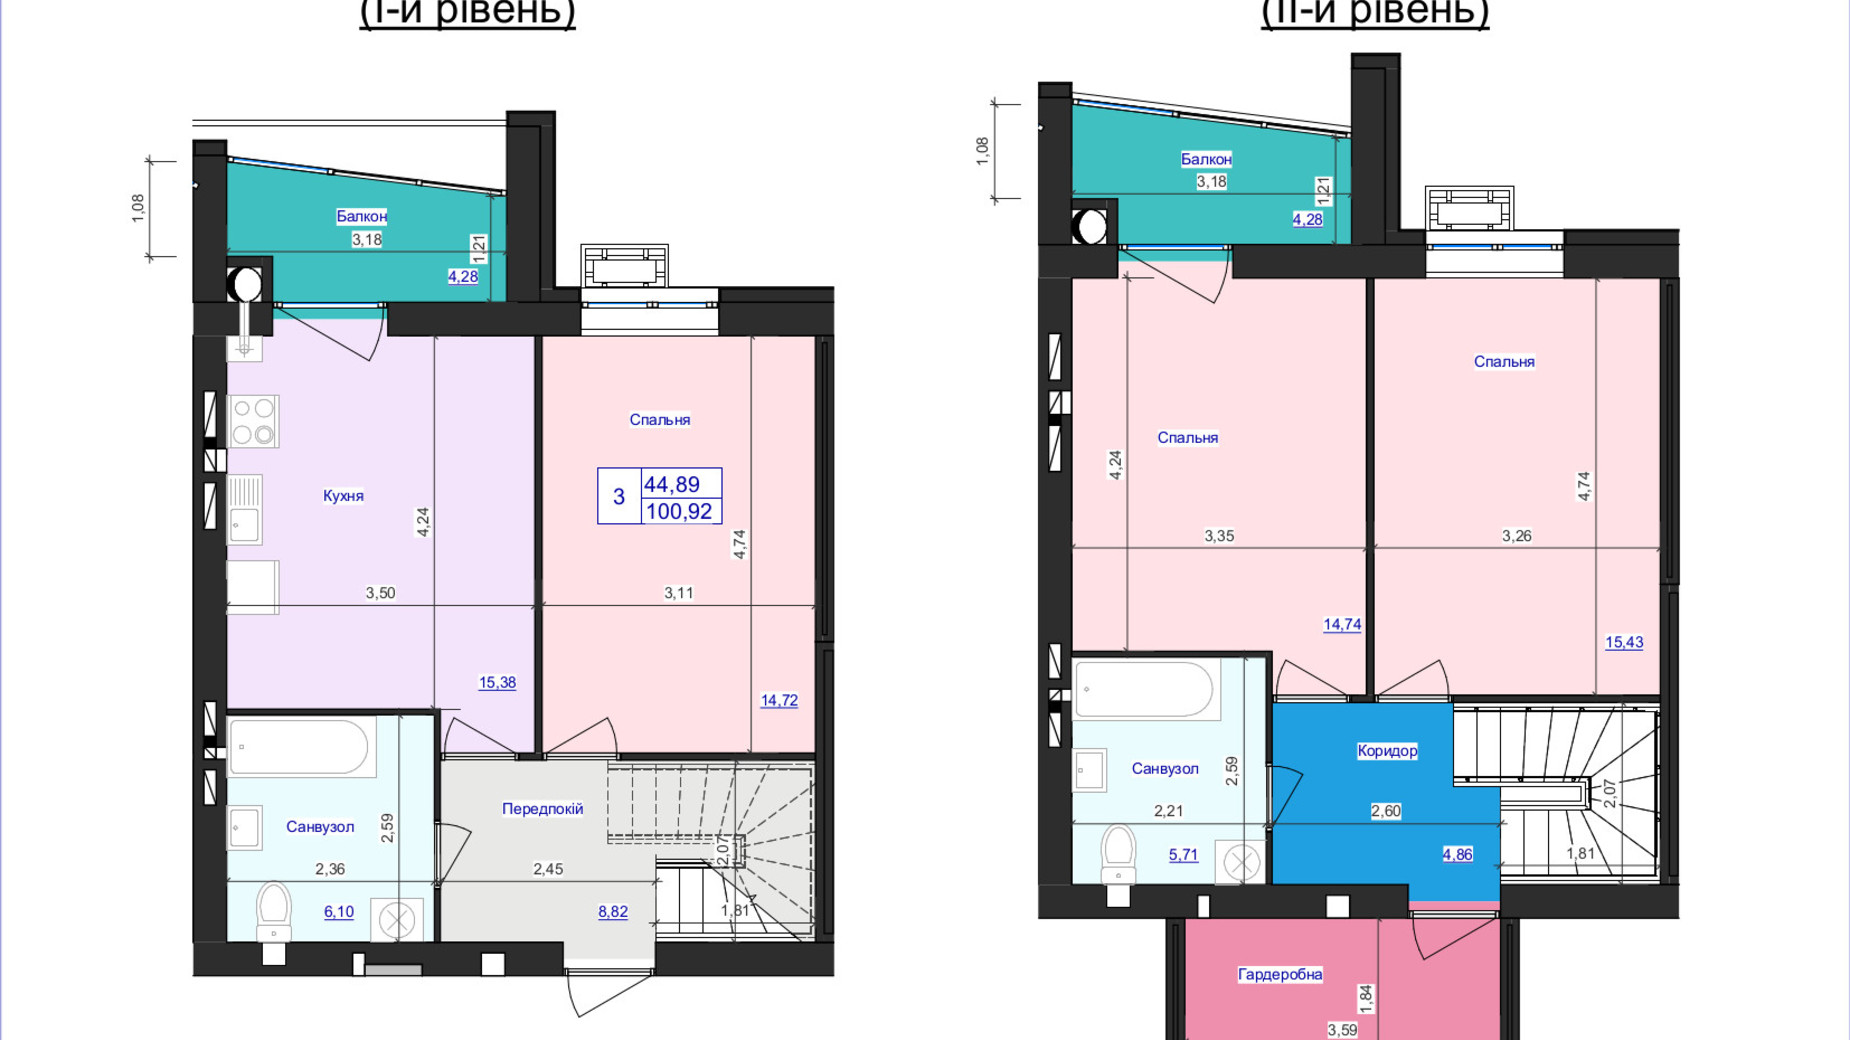 Планировка много­уровневой квартиры в ЖК Аристократ 100.92 м², фото 607960